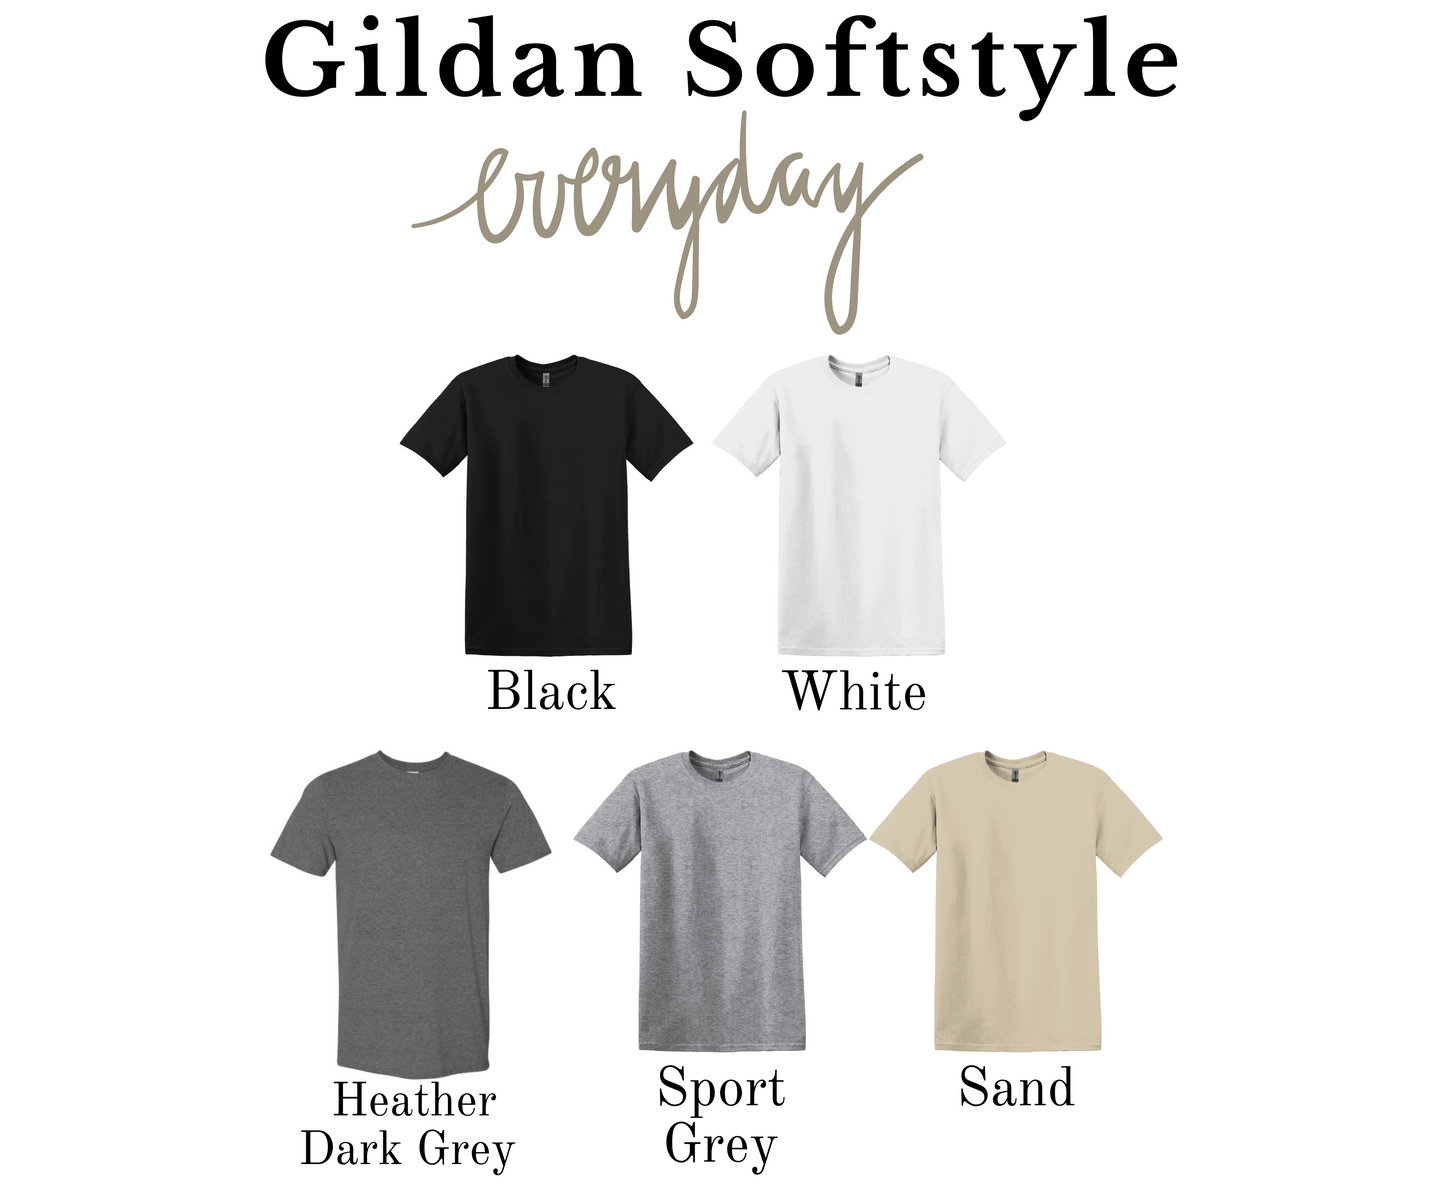 Whatever Christmas Tree Gildan Softstyle T-shirt